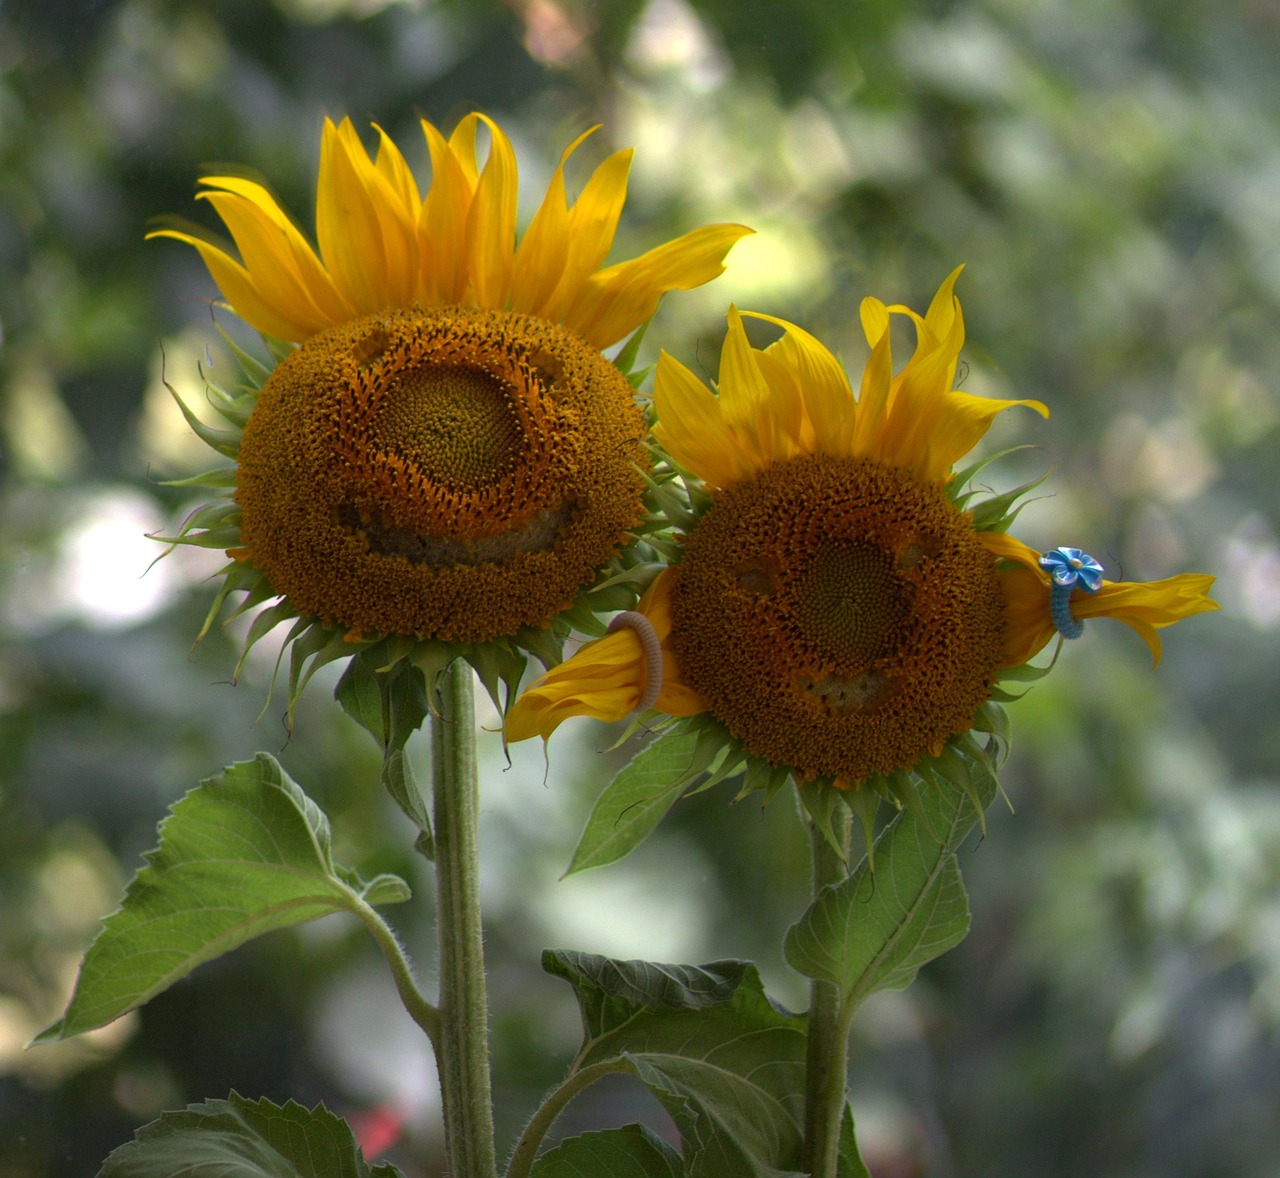 sunflower pair love free photo